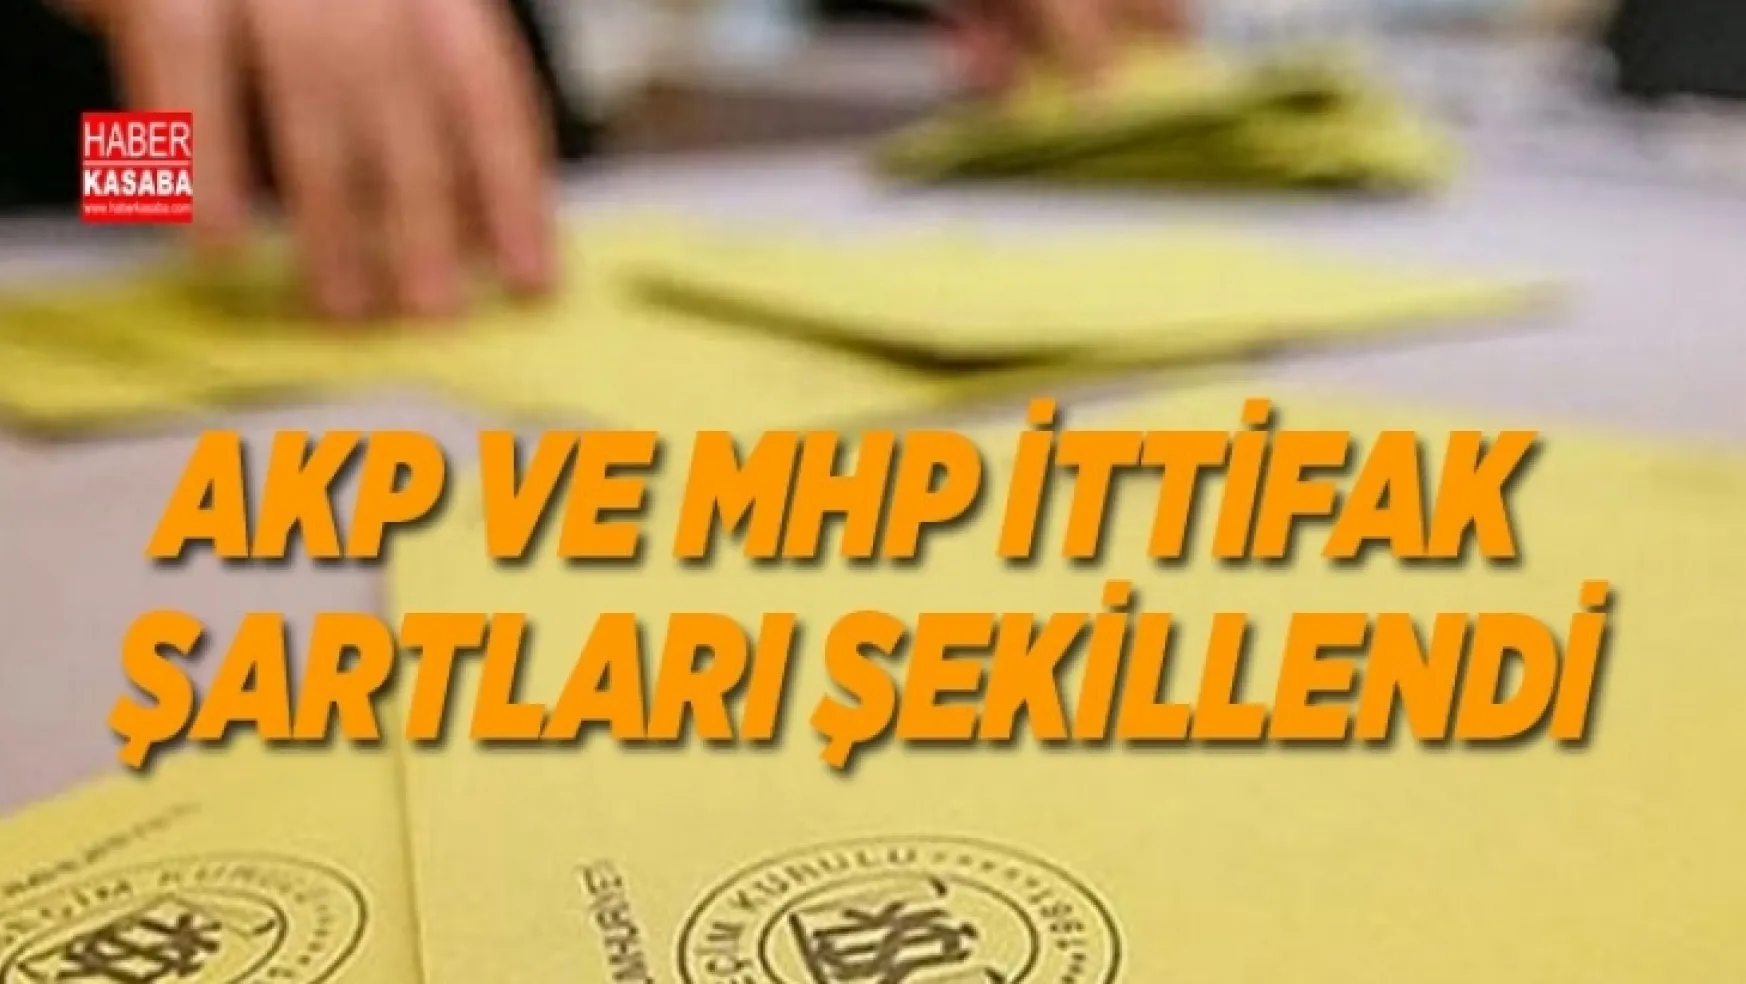 AKP ve MHP ittifak şartları şekilleniyor